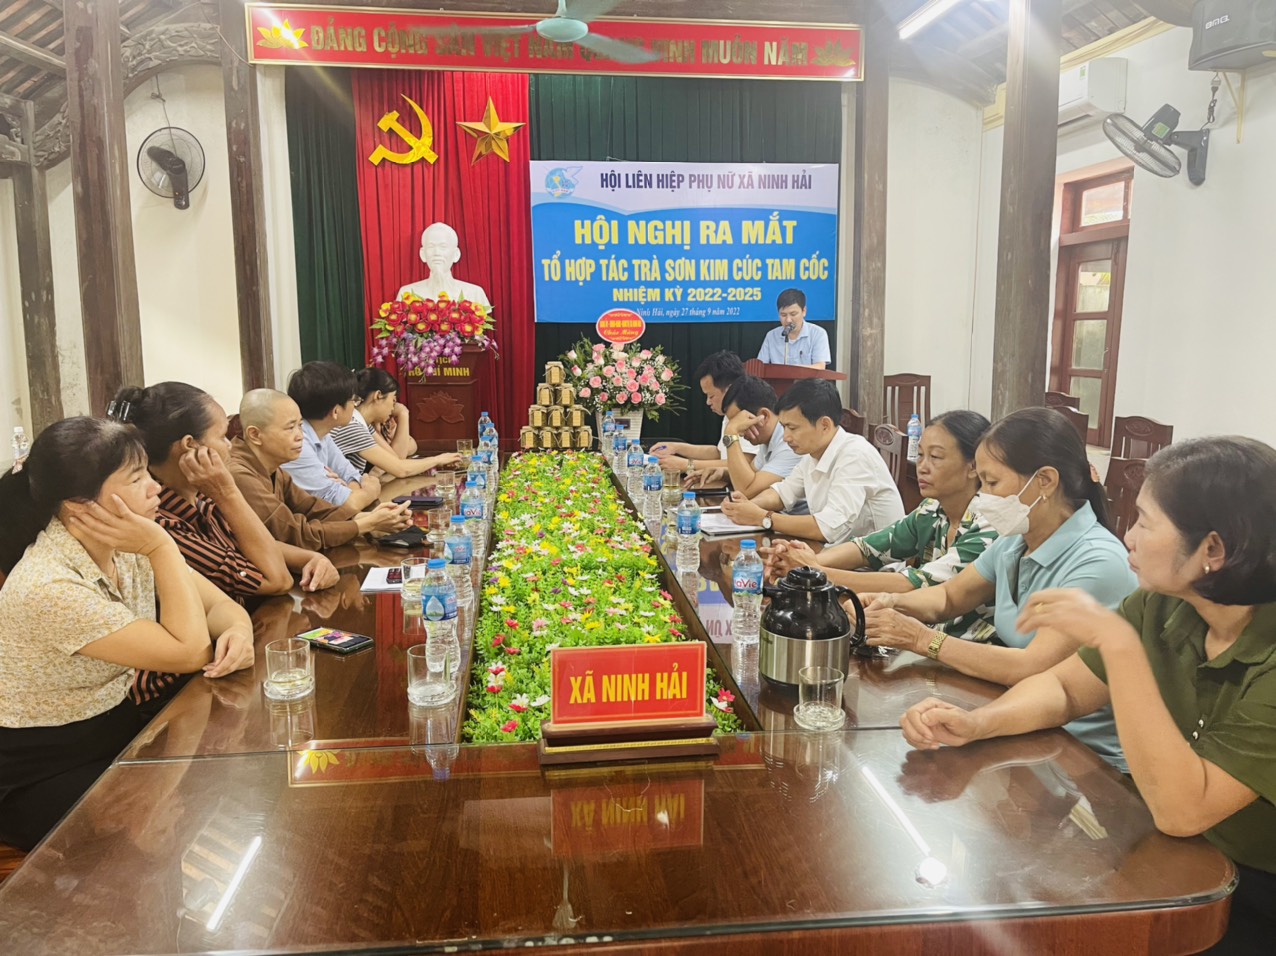 Hội nghị ra mẳt tổ hợp tác trà Sơn Kim Cúc Tam Cốc